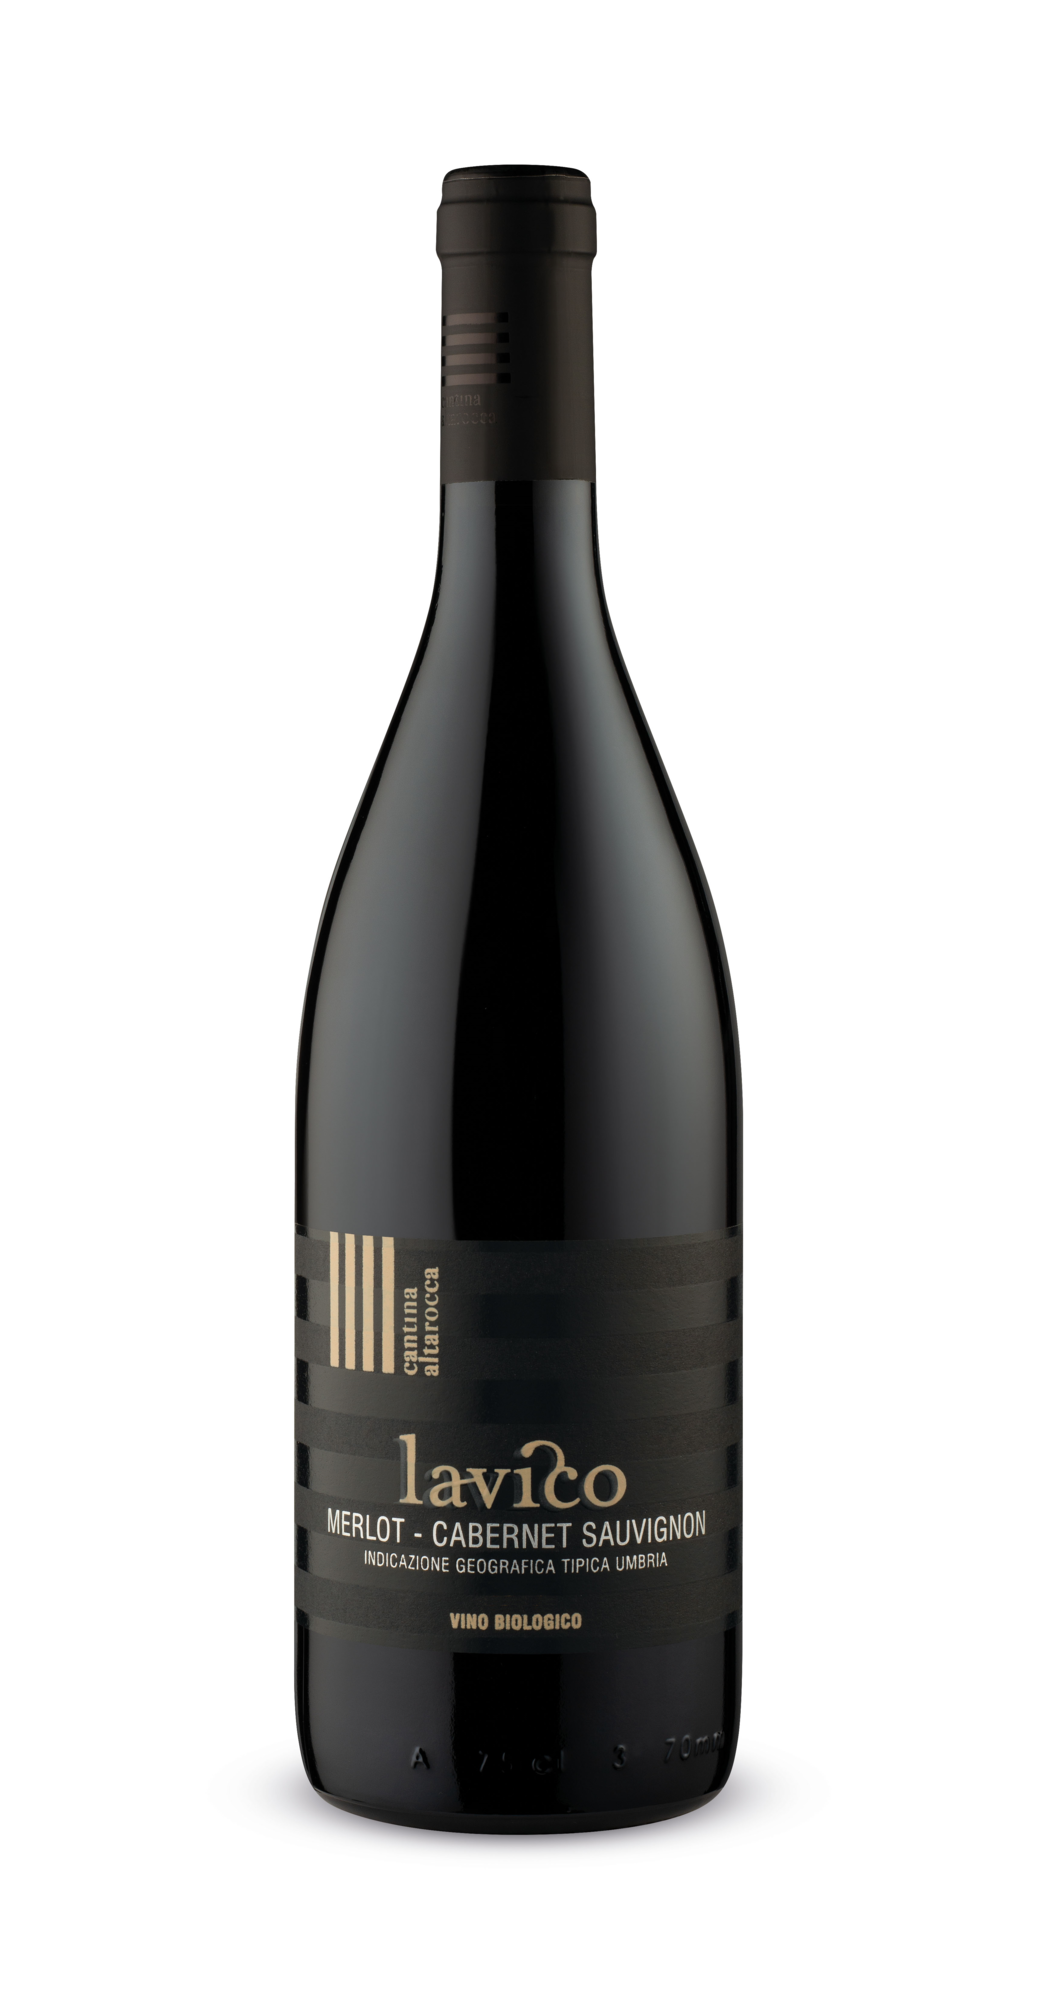 Lavico - Merlot, Cabernet Sauvignon Umbria IGT Organic Wine